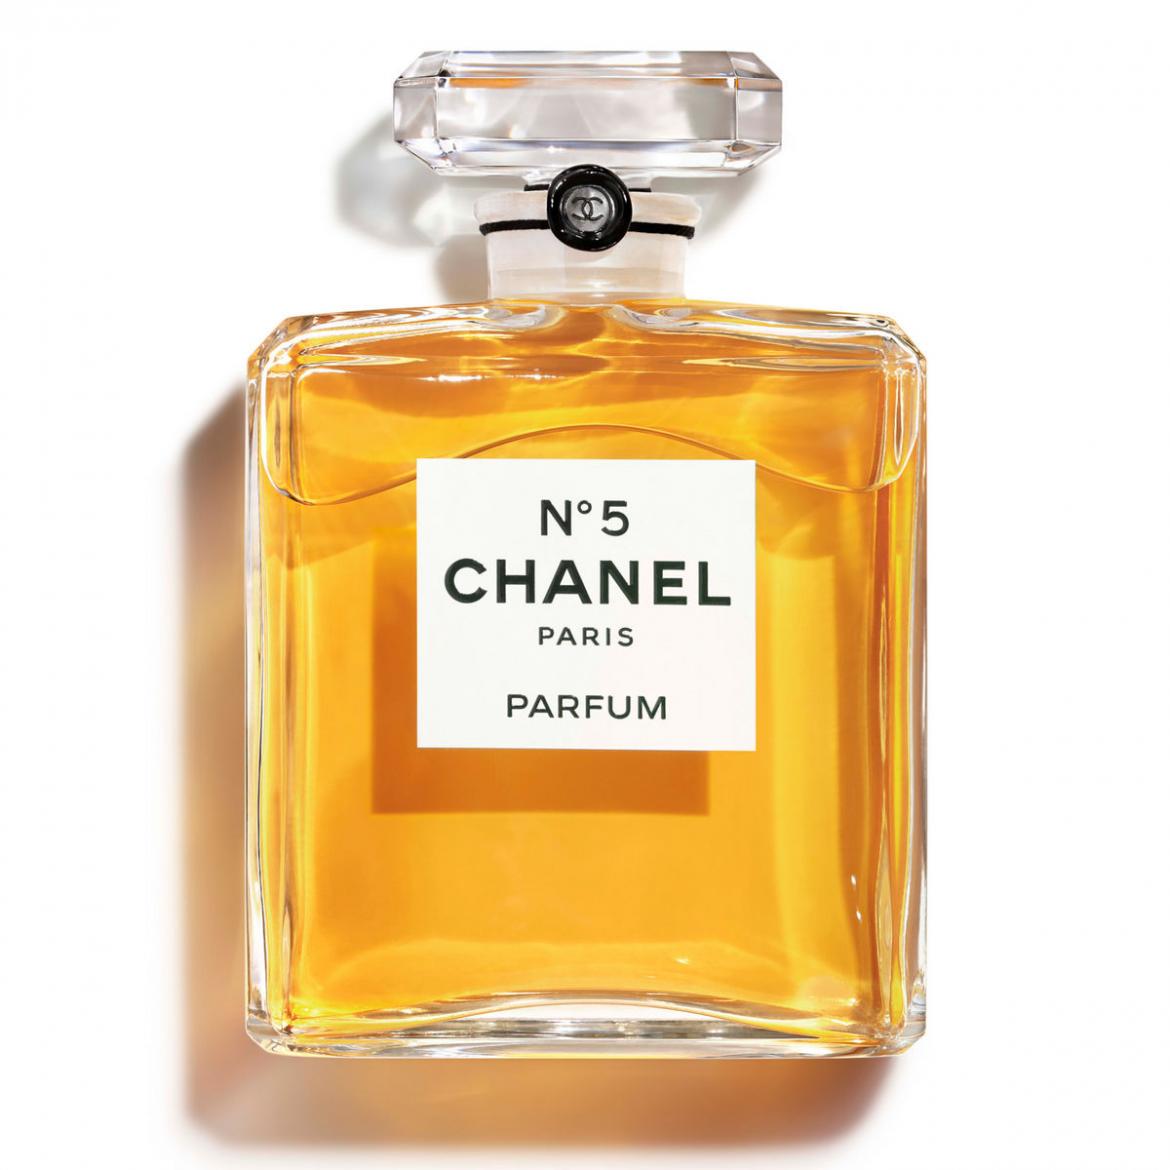 Chanel No.5 là một trong những lọ nước hoa trứ danh của Chanel.